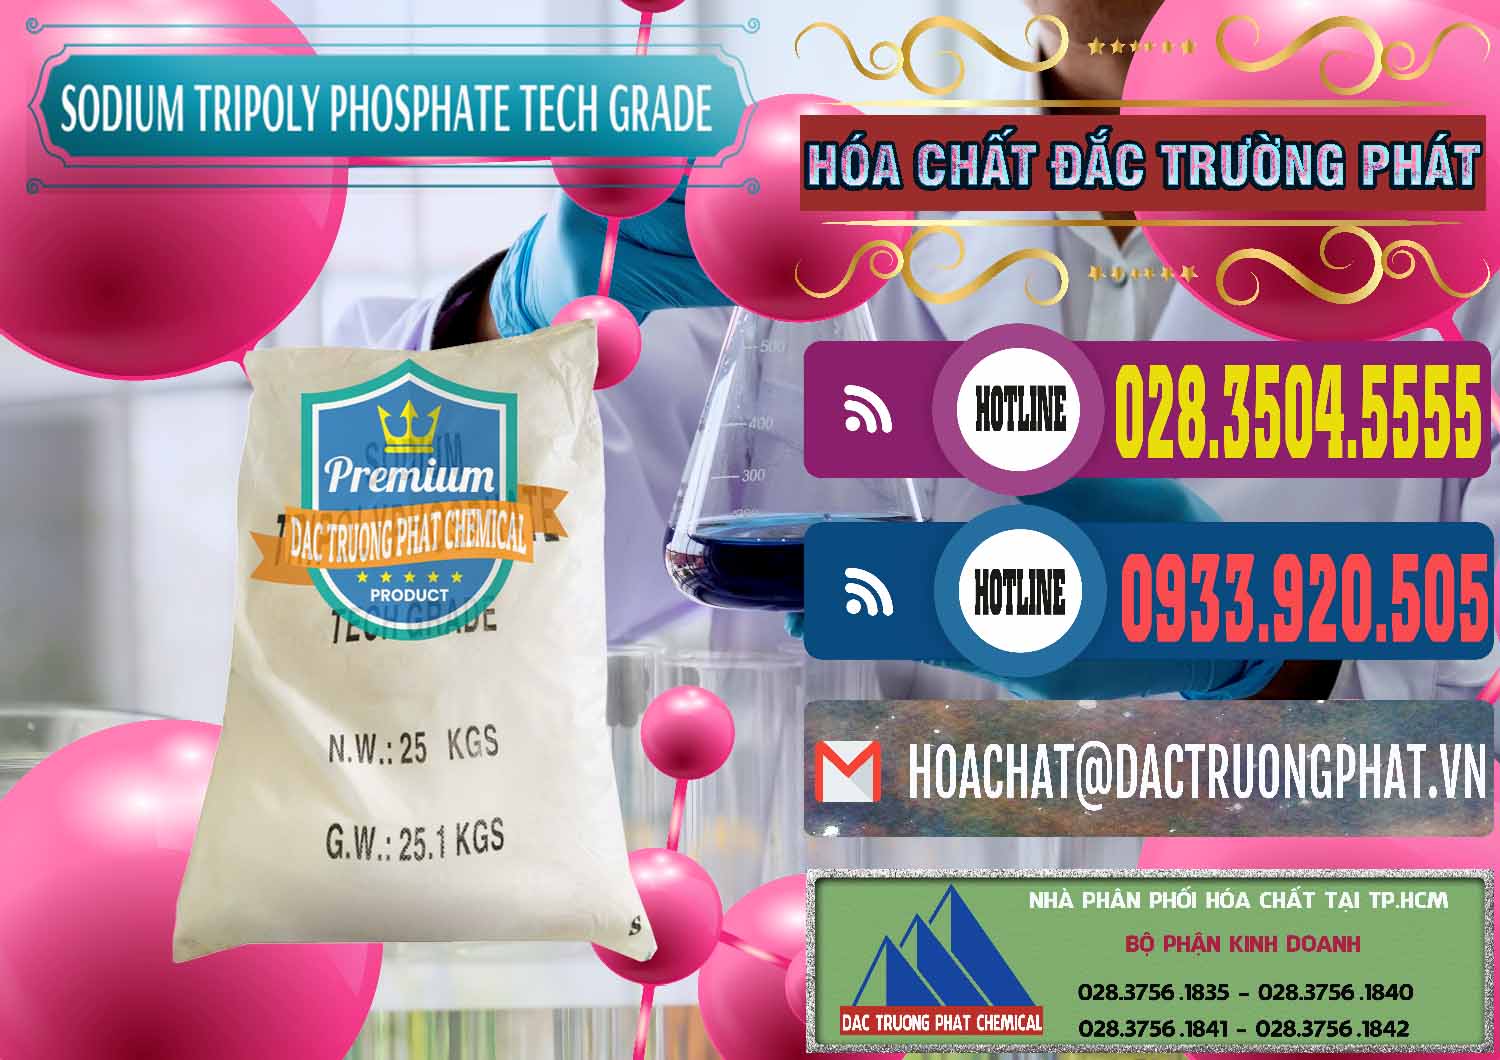 Cty bán _ cung cấp Sodium Tripoly Phosphate - STPP Tech Grade Trung Quốc China - 0453 - Phân phối ( cung cấp ) hóa chất tại TP.HCM - muabanhoachat.com.vn